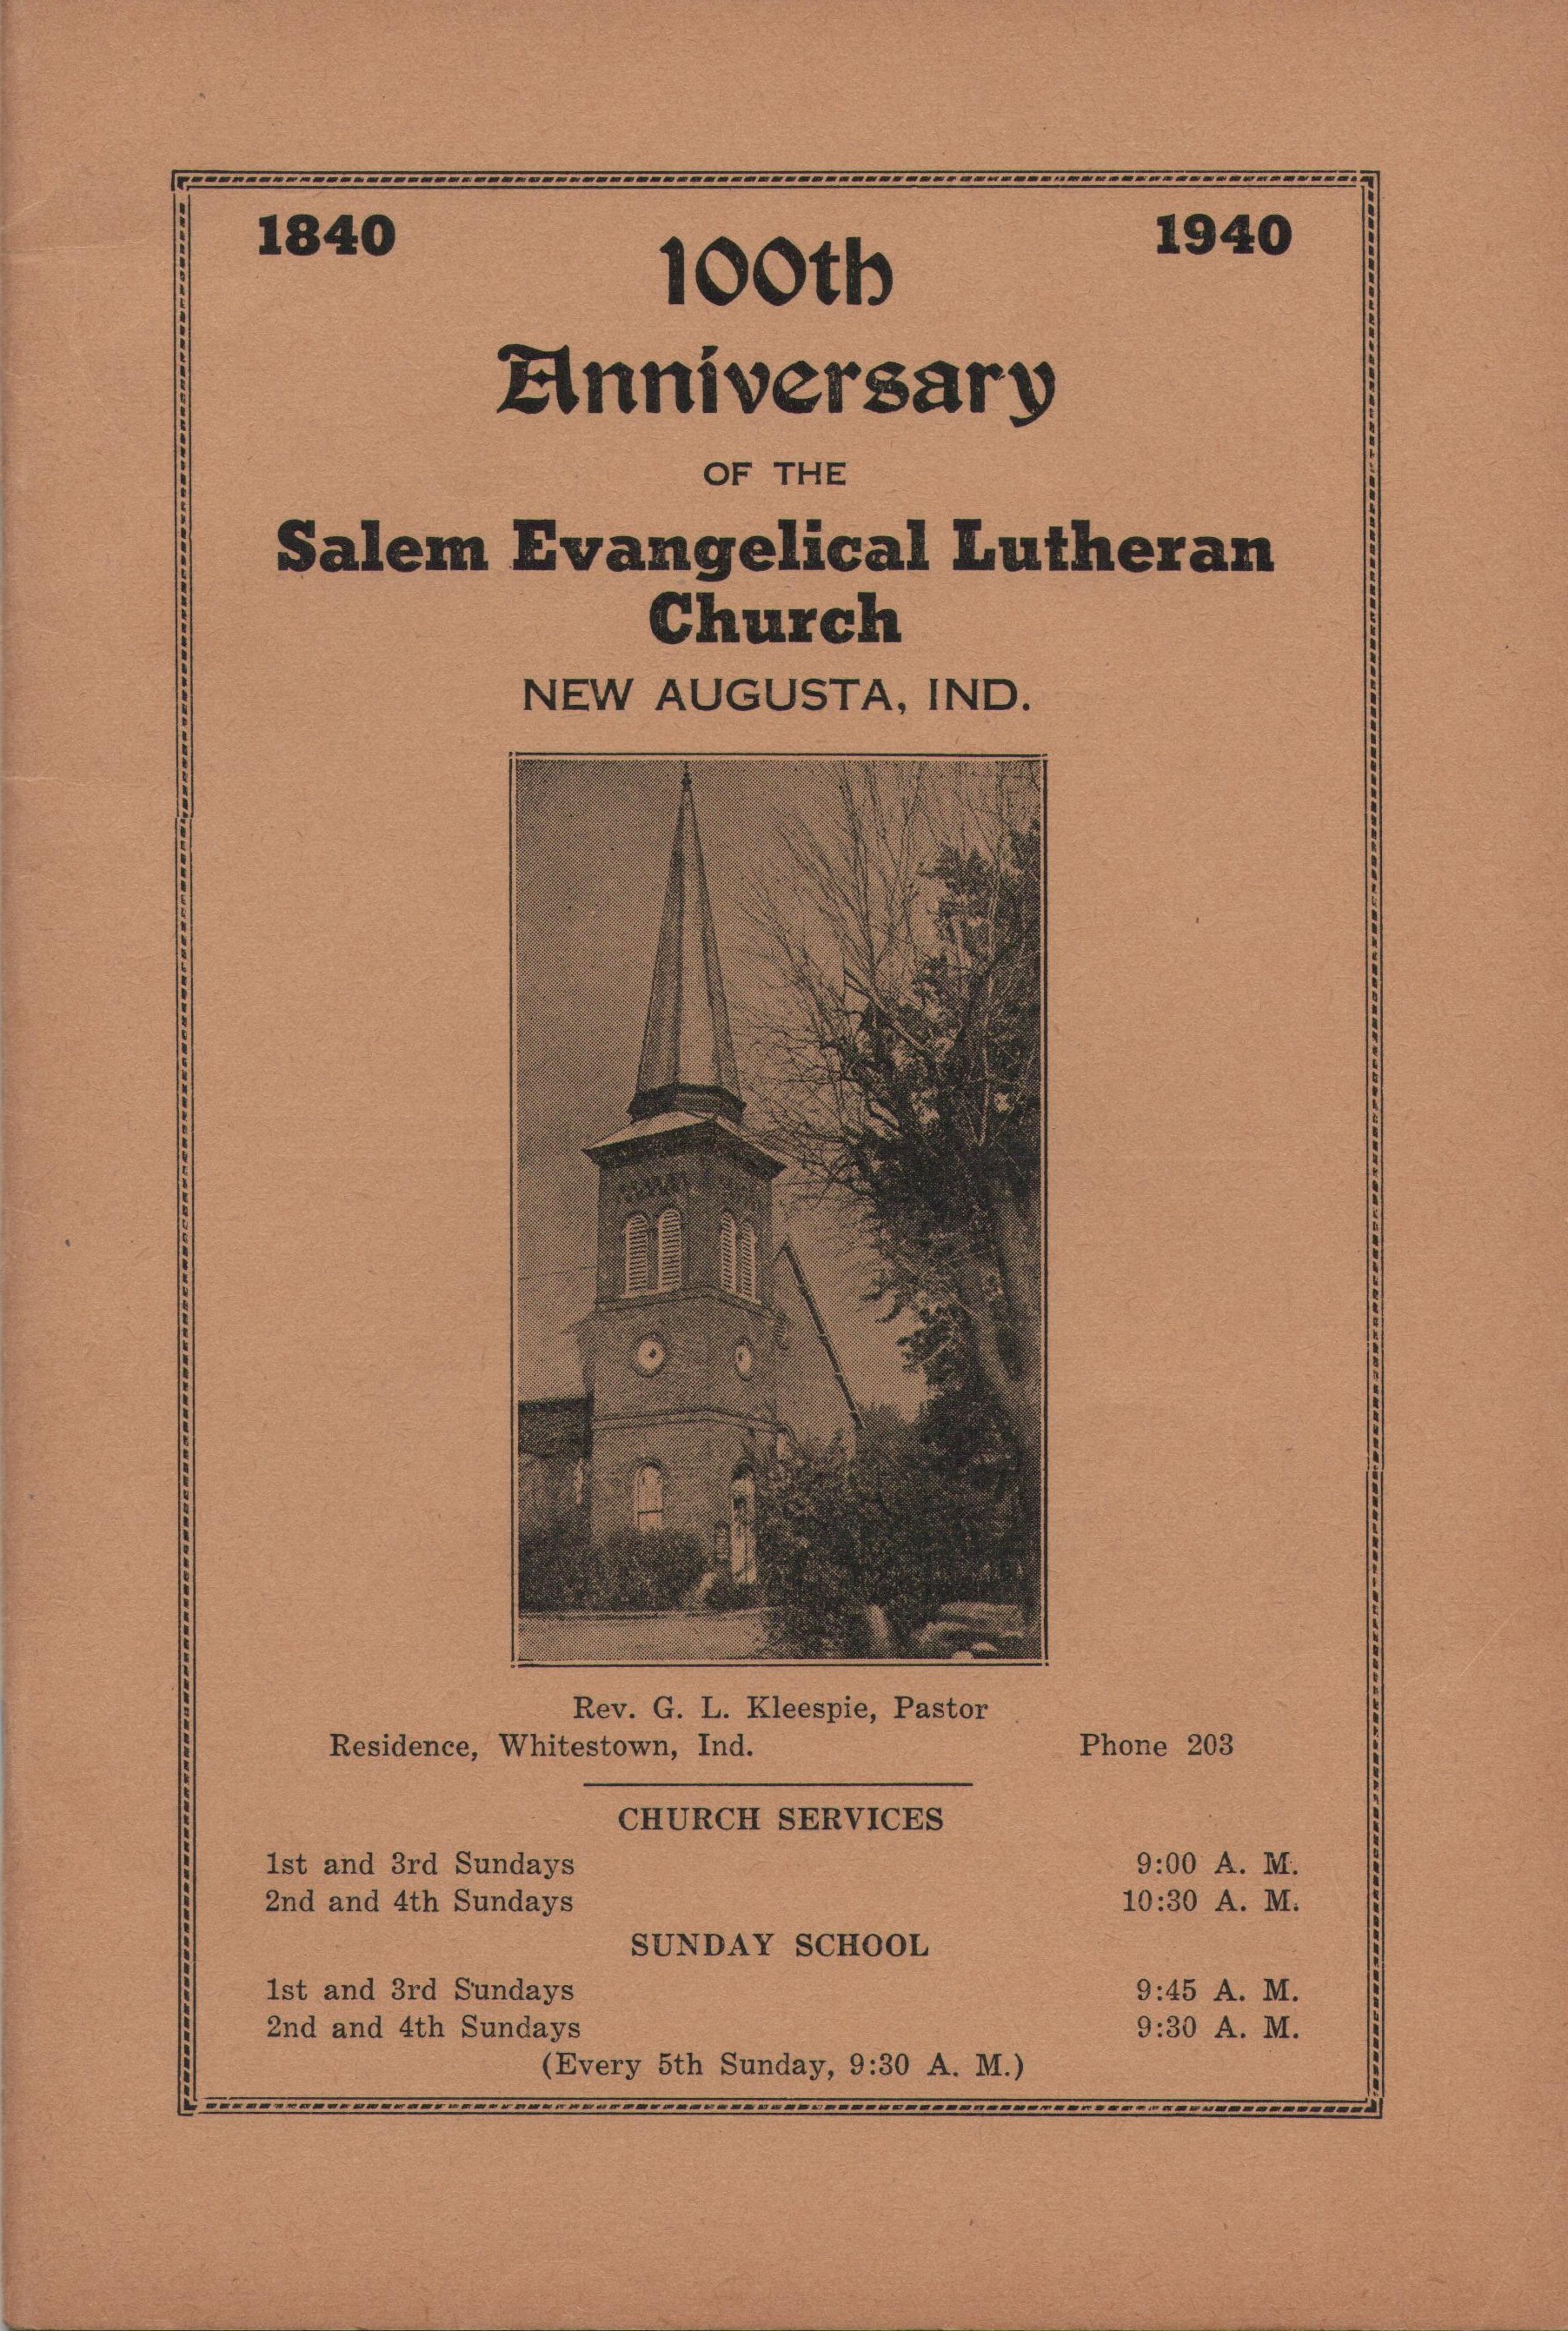 1940 Centennial Book Cover